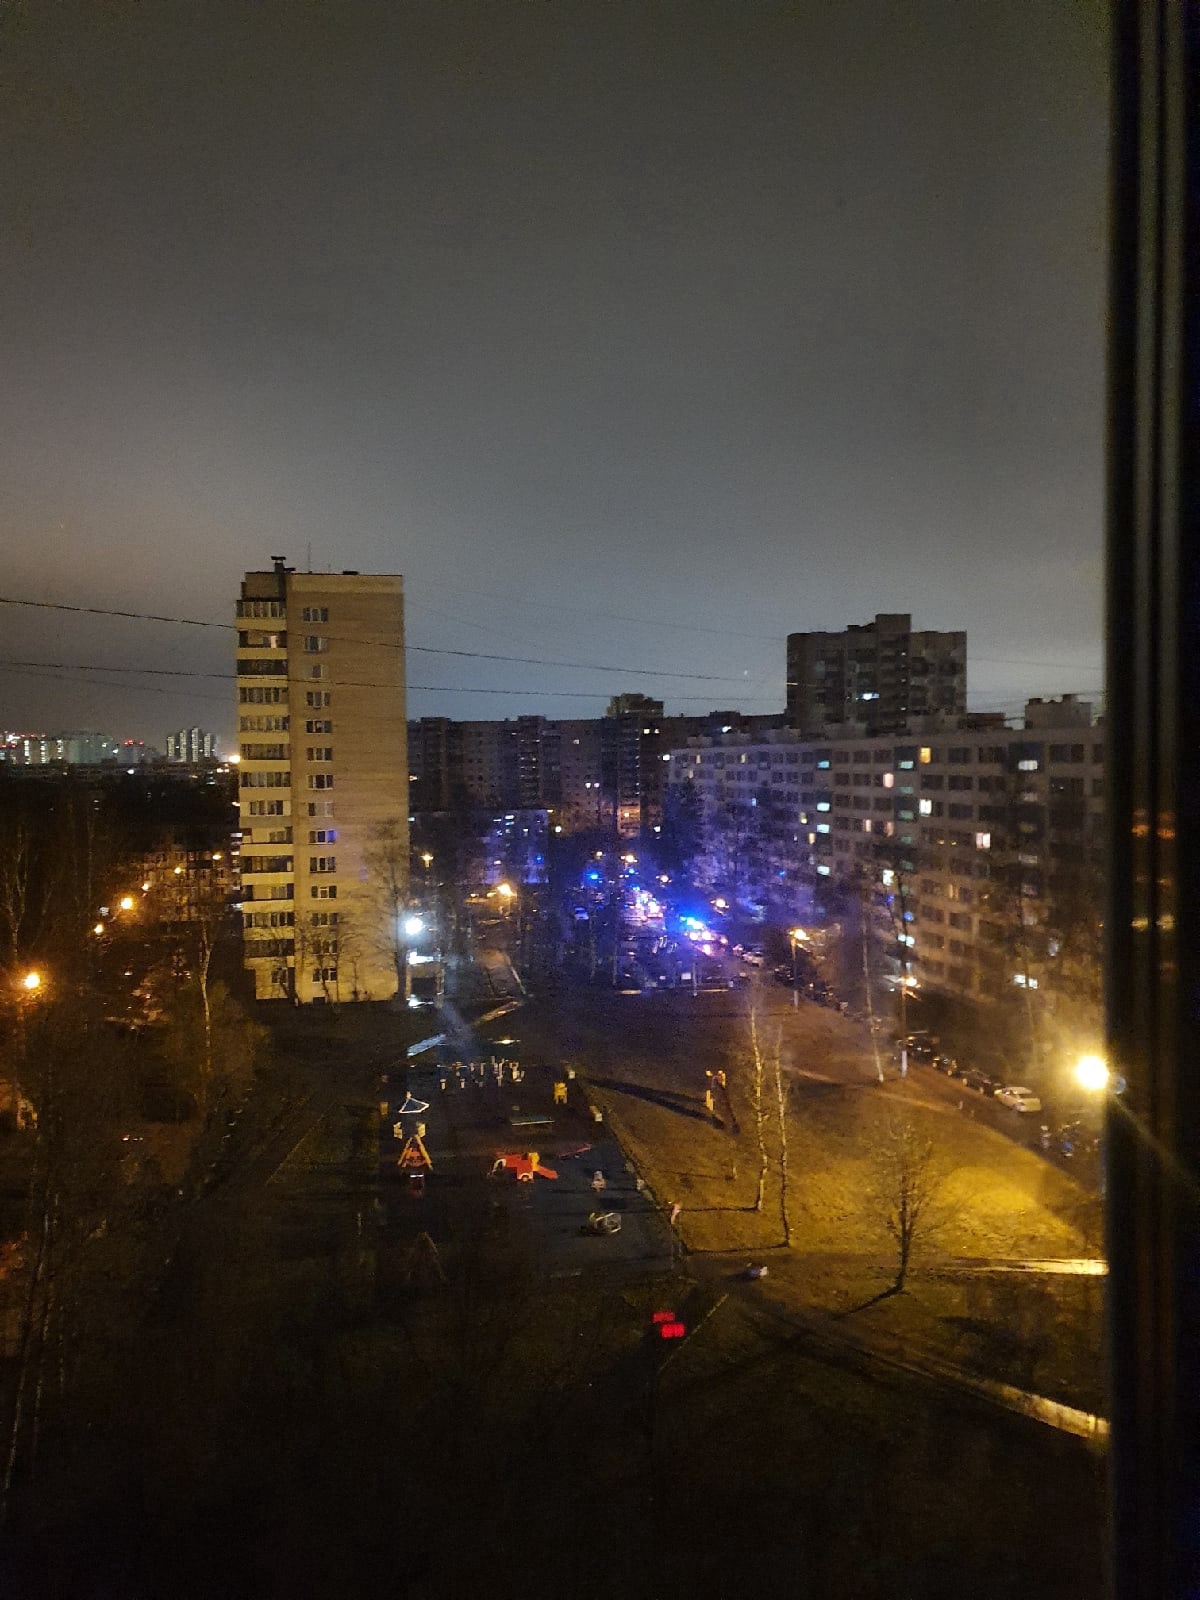 Что произошло в санкт петербурге сегодня взрыв. Взрыв на товарищеском проспекте. Товарищеский проспект 22к1. Санкт-Петербург товарищеский проспект 22к1. Ночные окна.